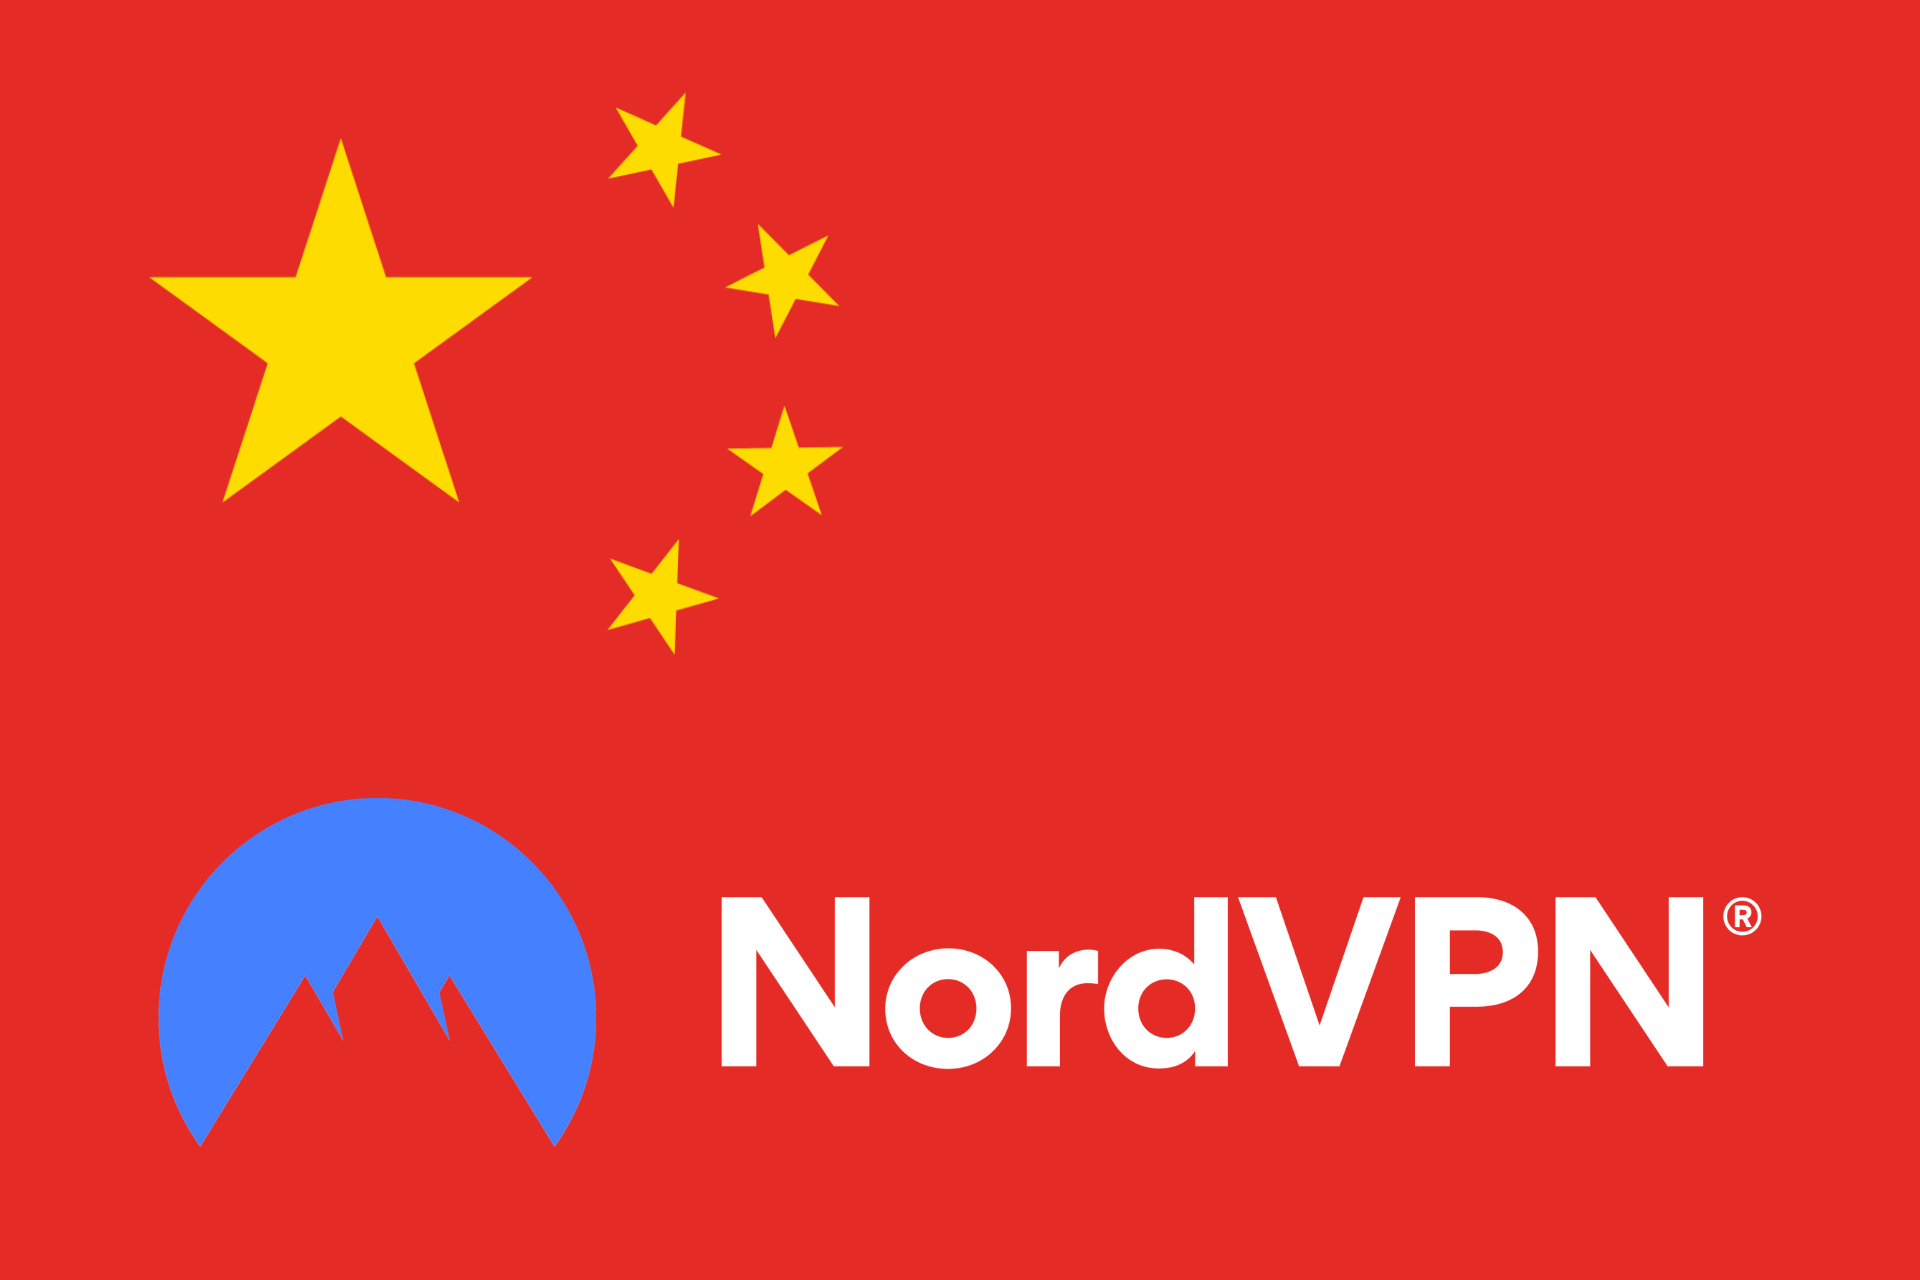 NordVPN not working in China